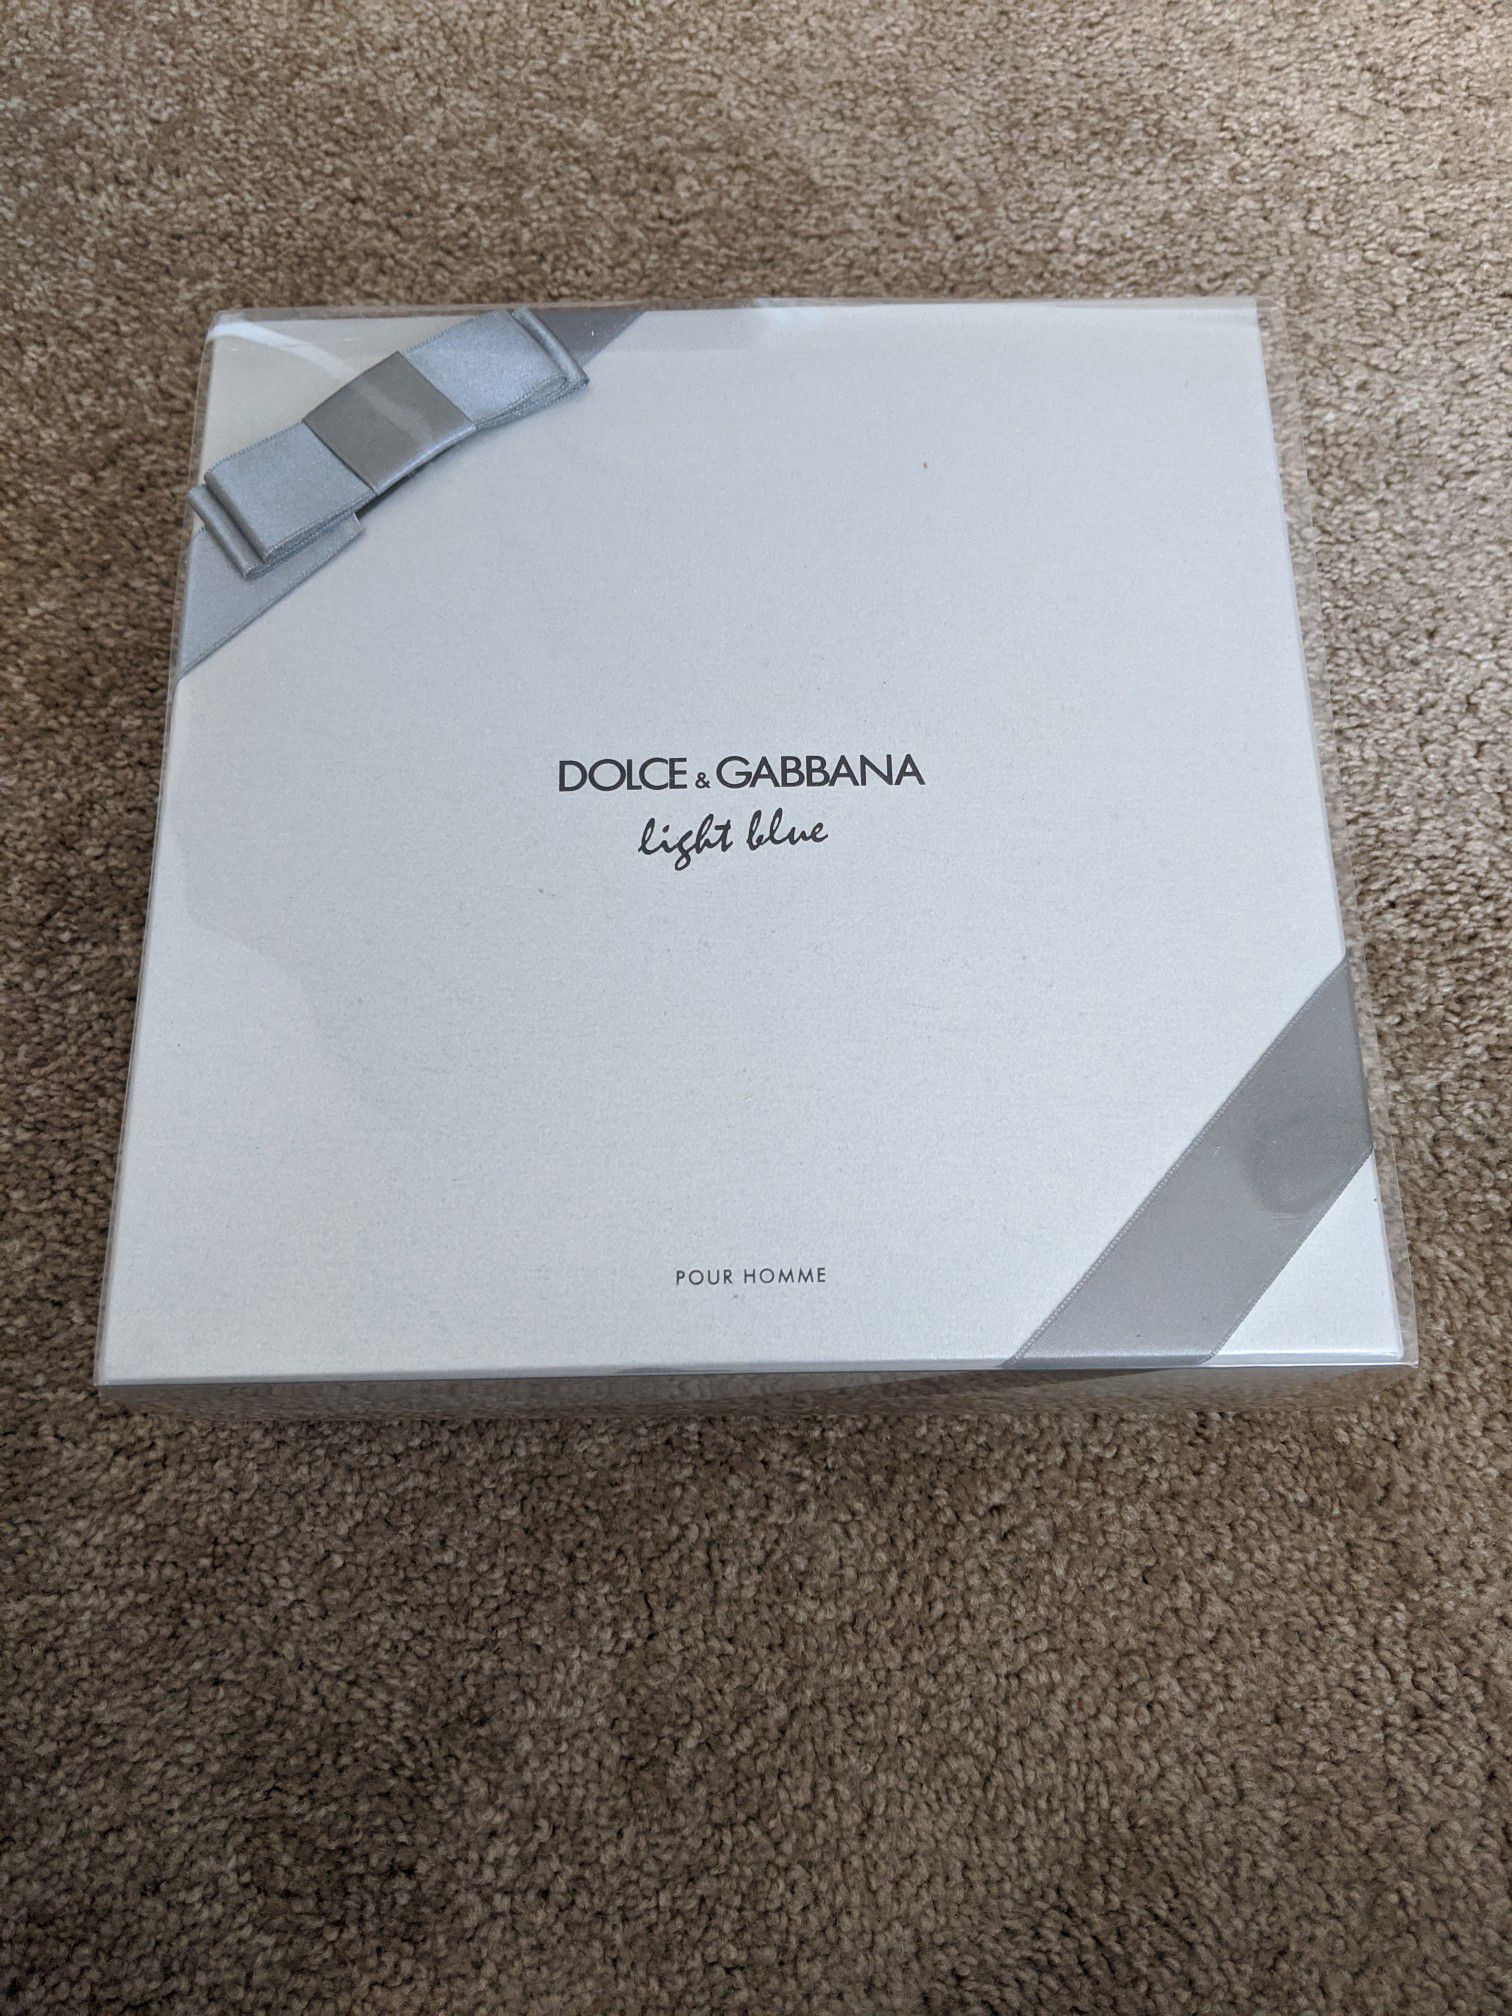 Dolce & Gabbana light blue Men Gift set